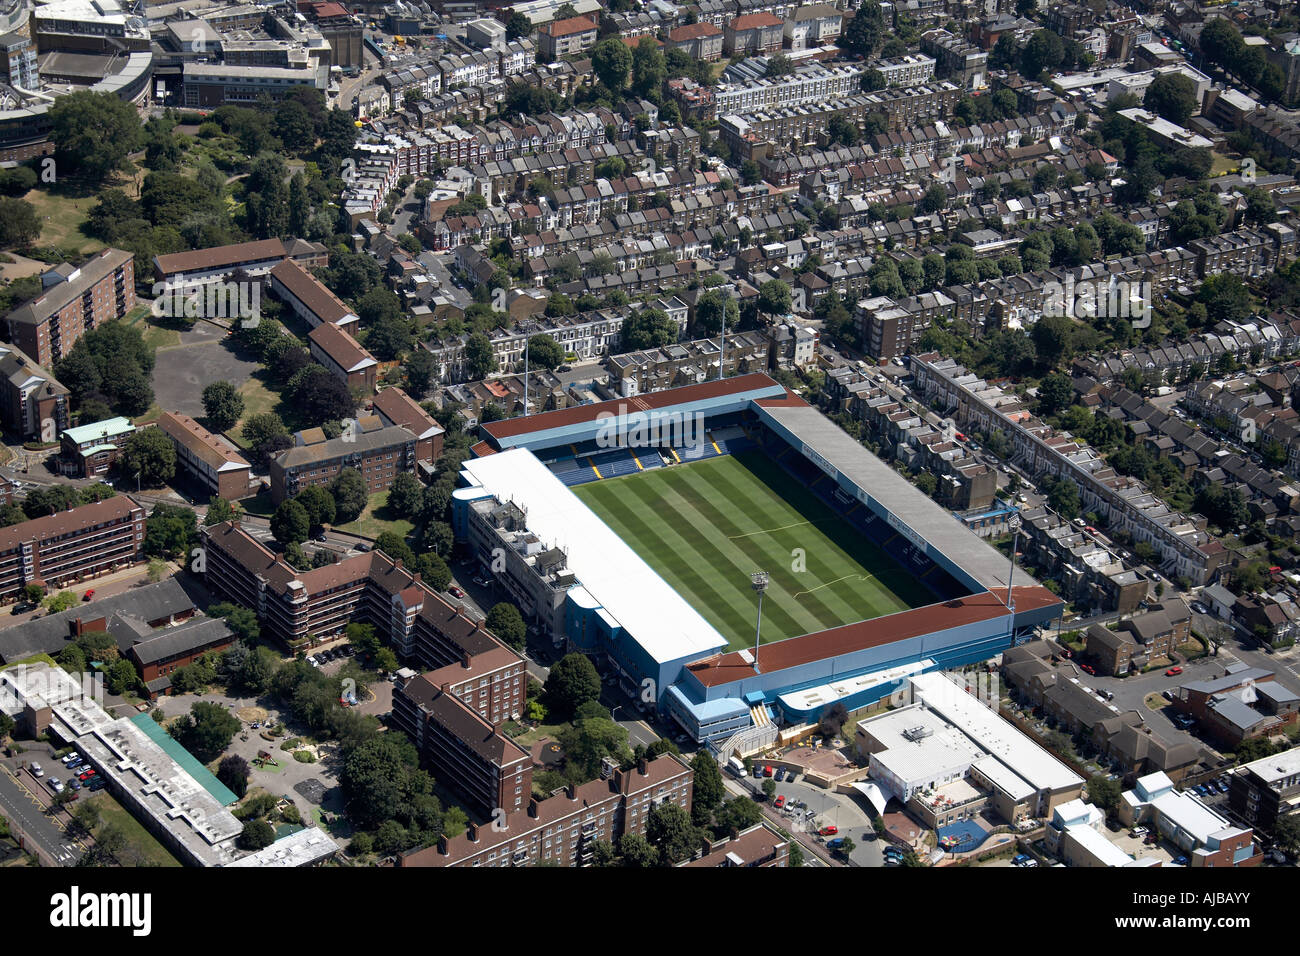 Vue aérienne au sud-ouest de Queens Park Rangers football F C Centre de BBC TV banlieue London England UK zzz le haut Banque D'Images